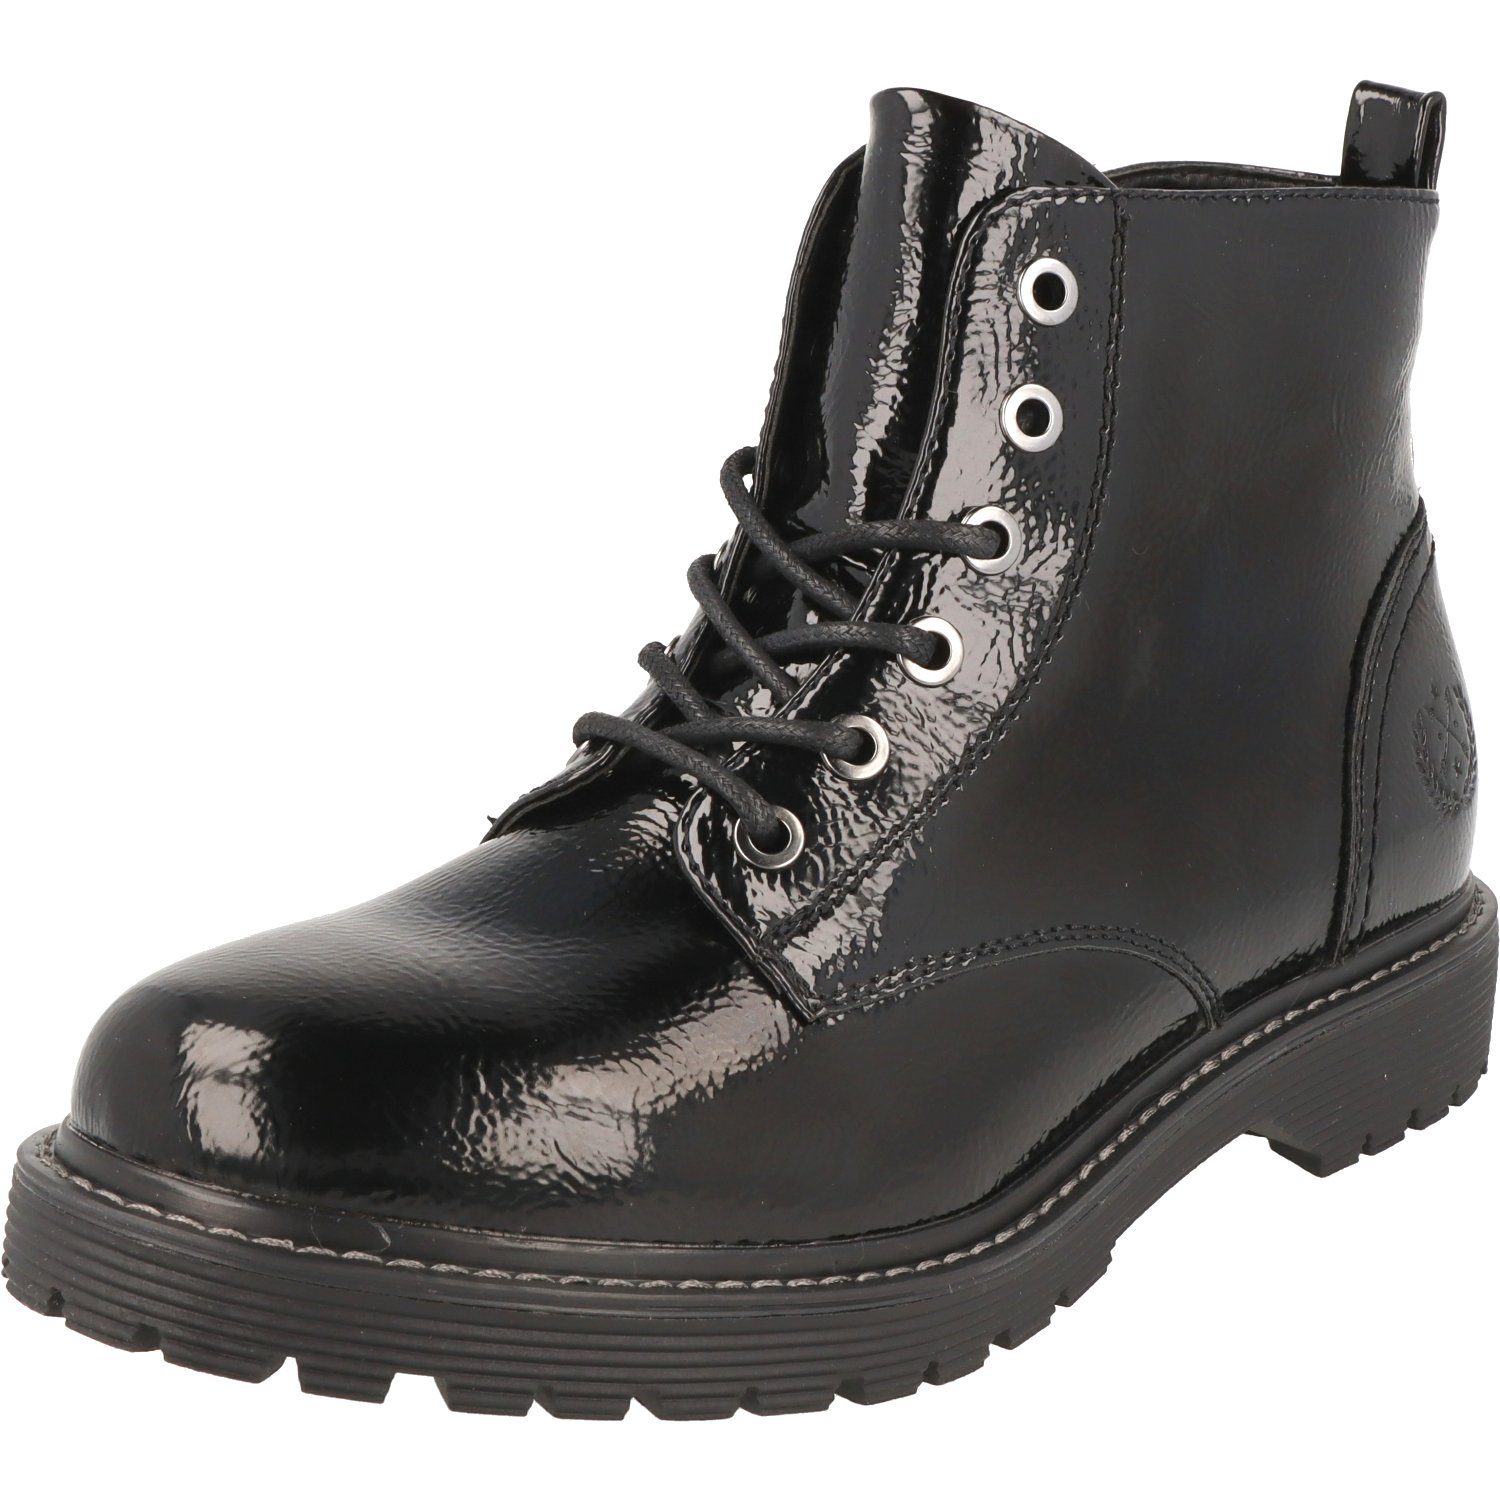 Jane Klain Damen Schuhe Lack Boots Stiefel 252-366 Black Lack Schnürboots